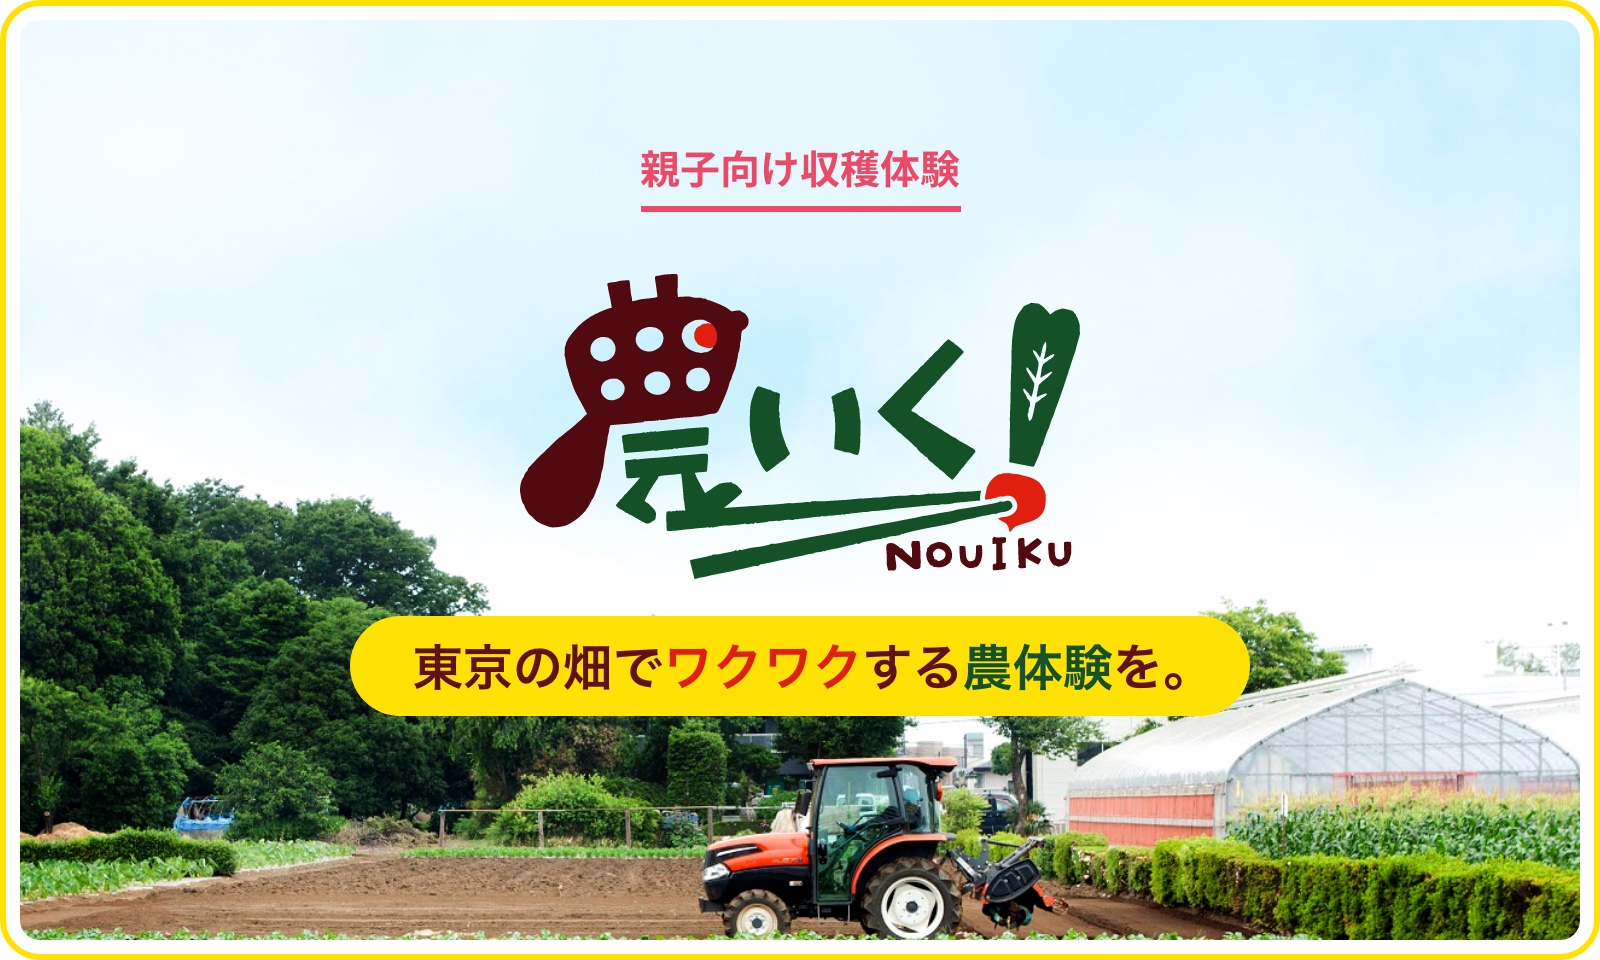 東京の畑でワクワクする農体験を。都市住民と東京の農家さんをつなぐ農体験イベント「農いく！」